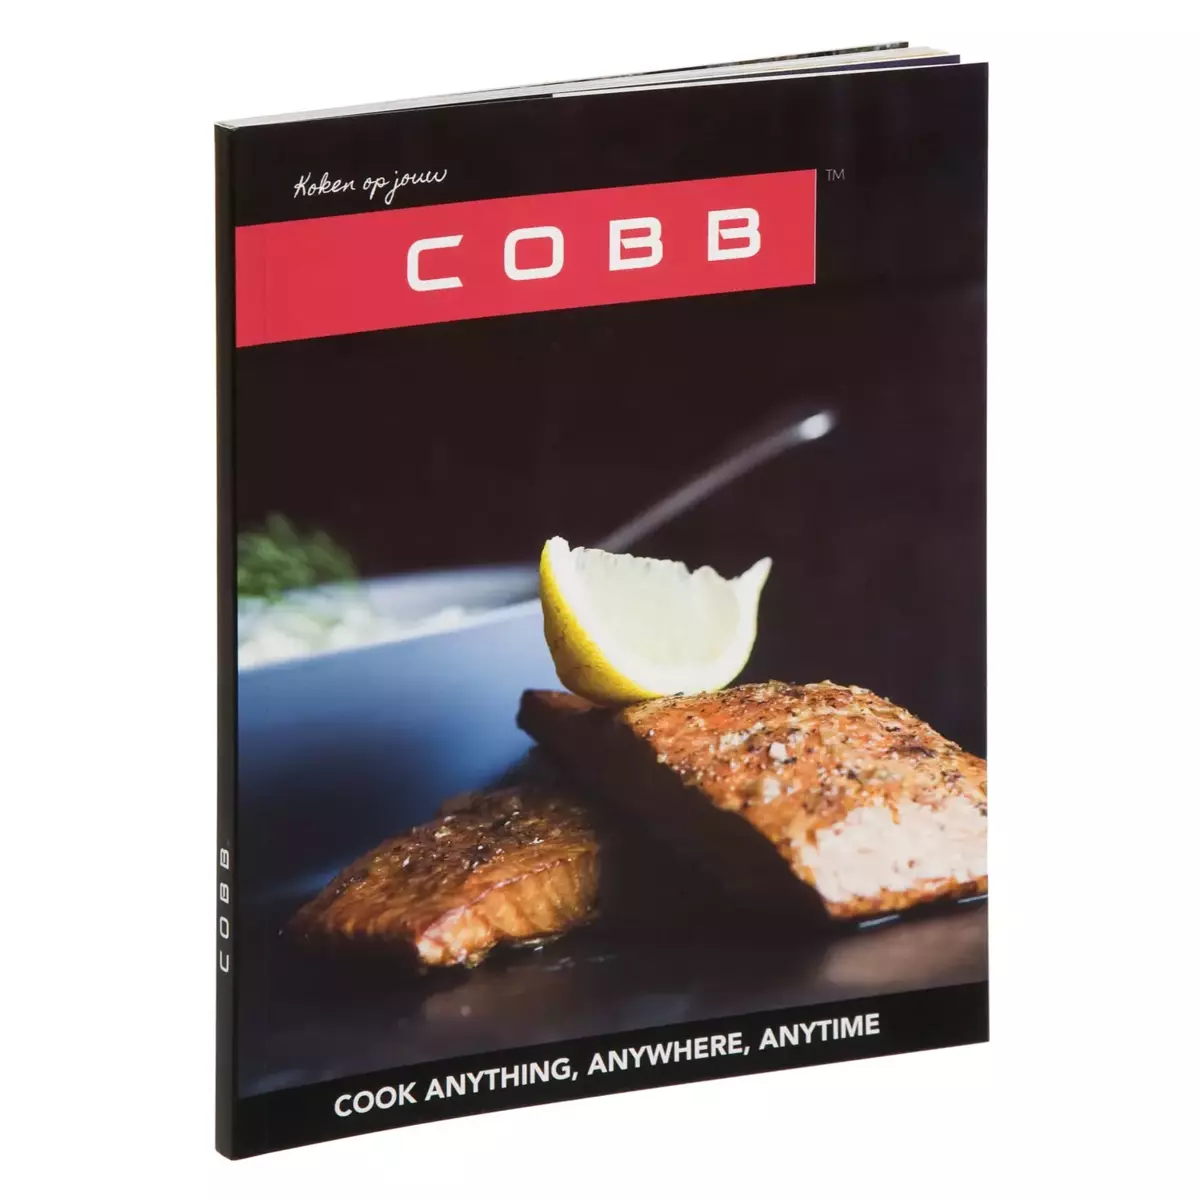 Kookboek "Koken op jouw "Cobb, Cobb, www.bbqkopen.nl